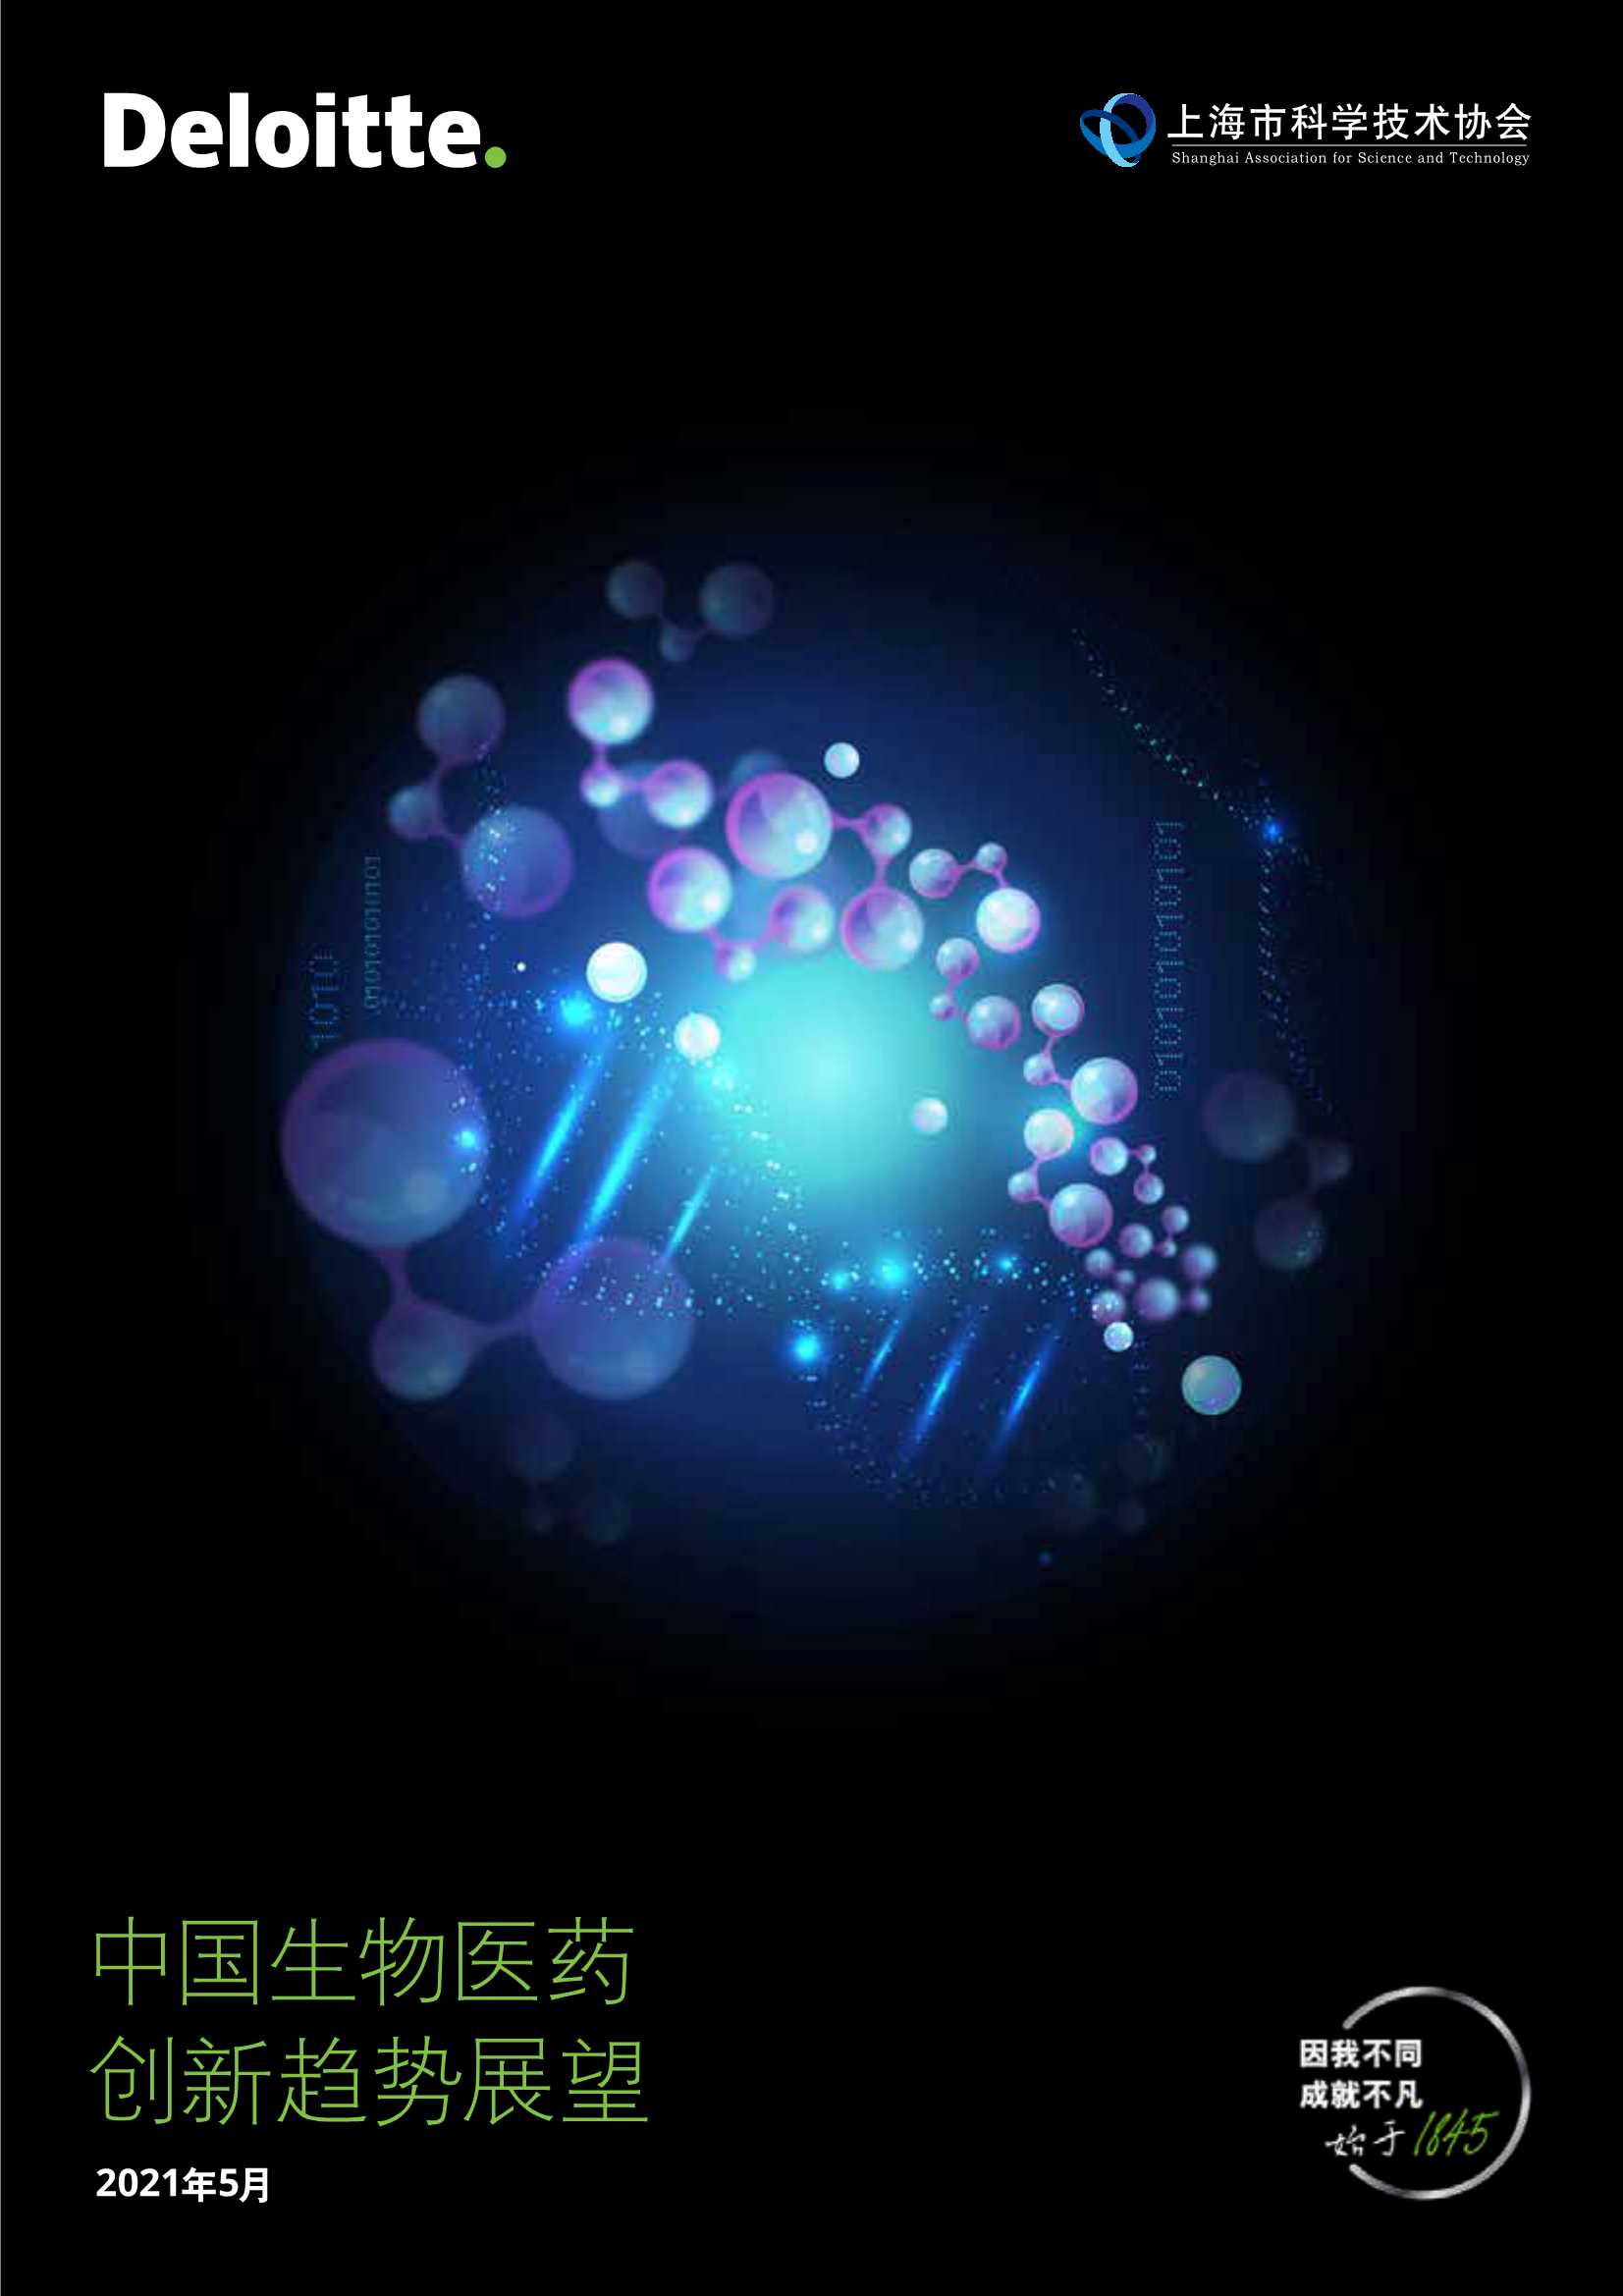 德勤&上海市科协-中国生物医药创新趋势展望-2021.05-72页